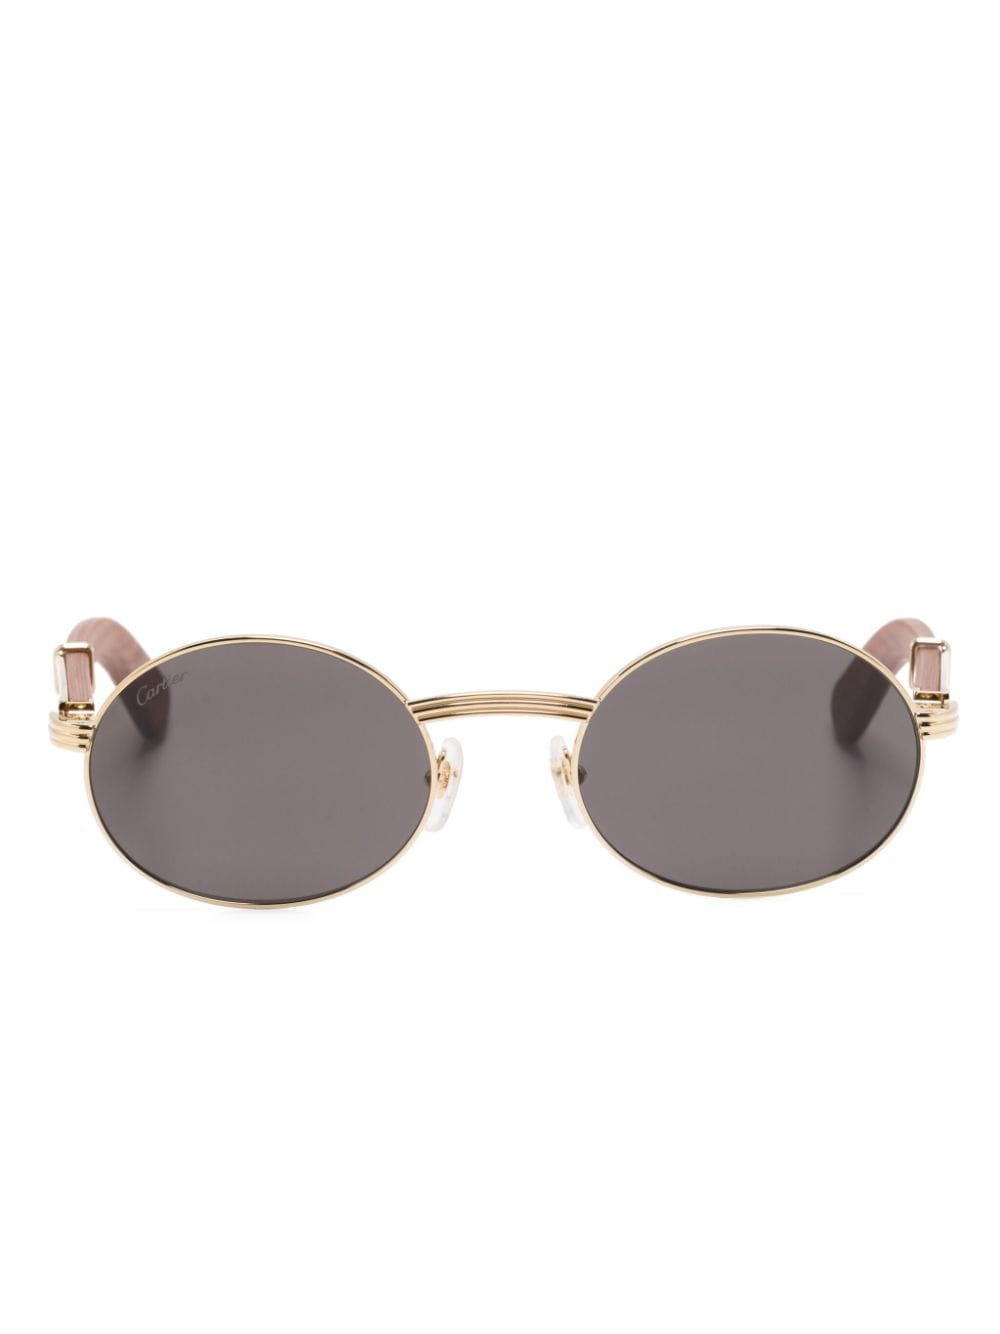 Cartier Eyewear Sonnenbrille mit ovalem Gestell - Braun von Cartier Eyewear